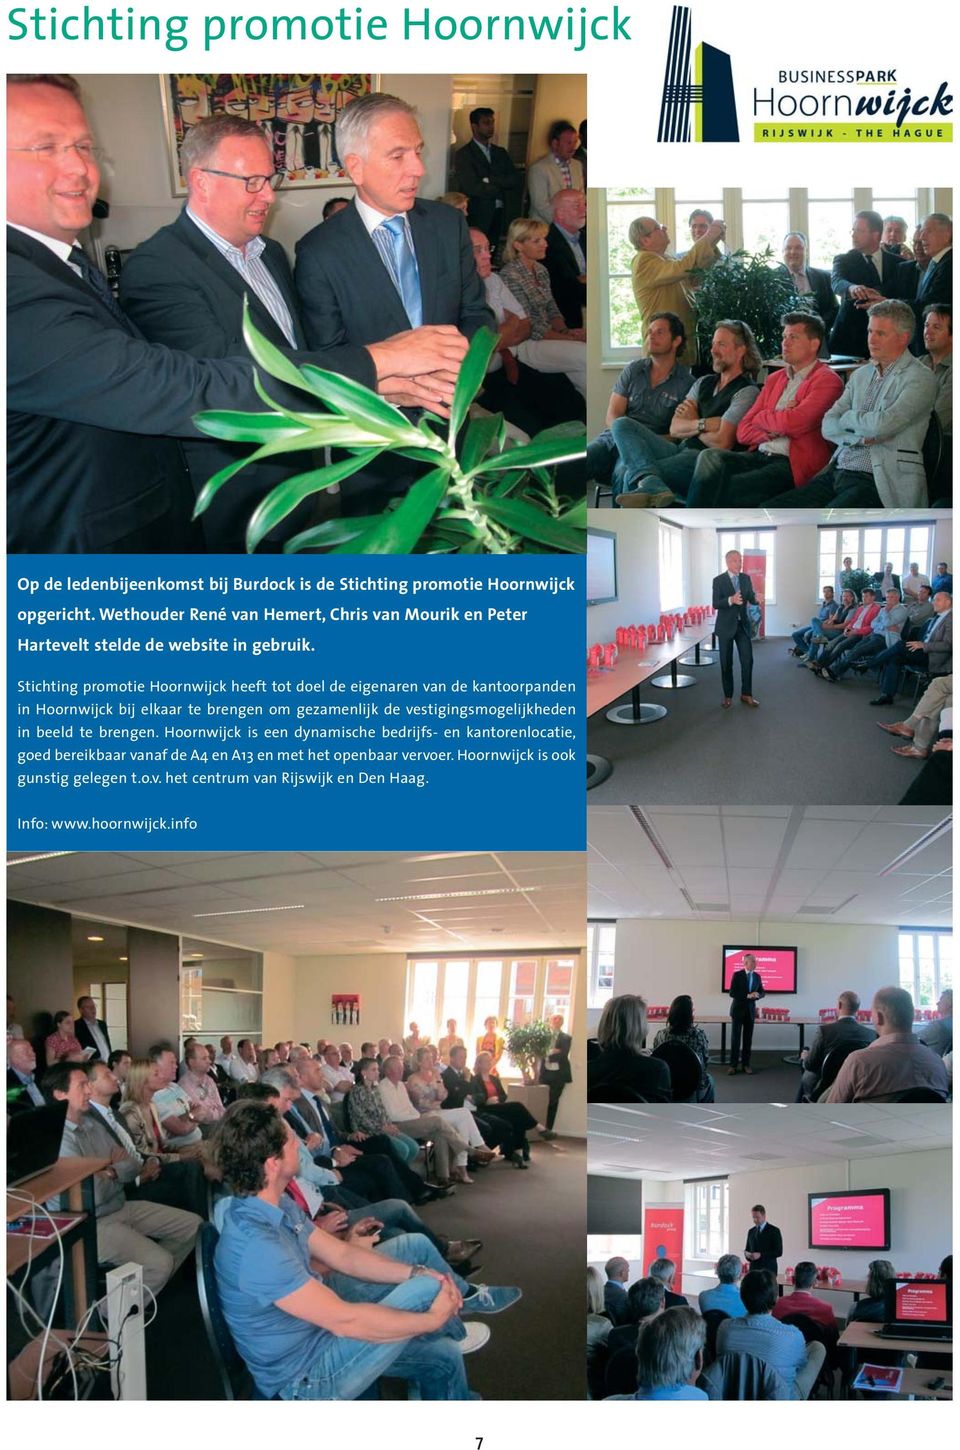 Stichting promotie Hoornwijck heeft tot doel de eigenaren van de kantoorpanden in Hoornwijck bij elkaar te brengen om gezamenlijk de